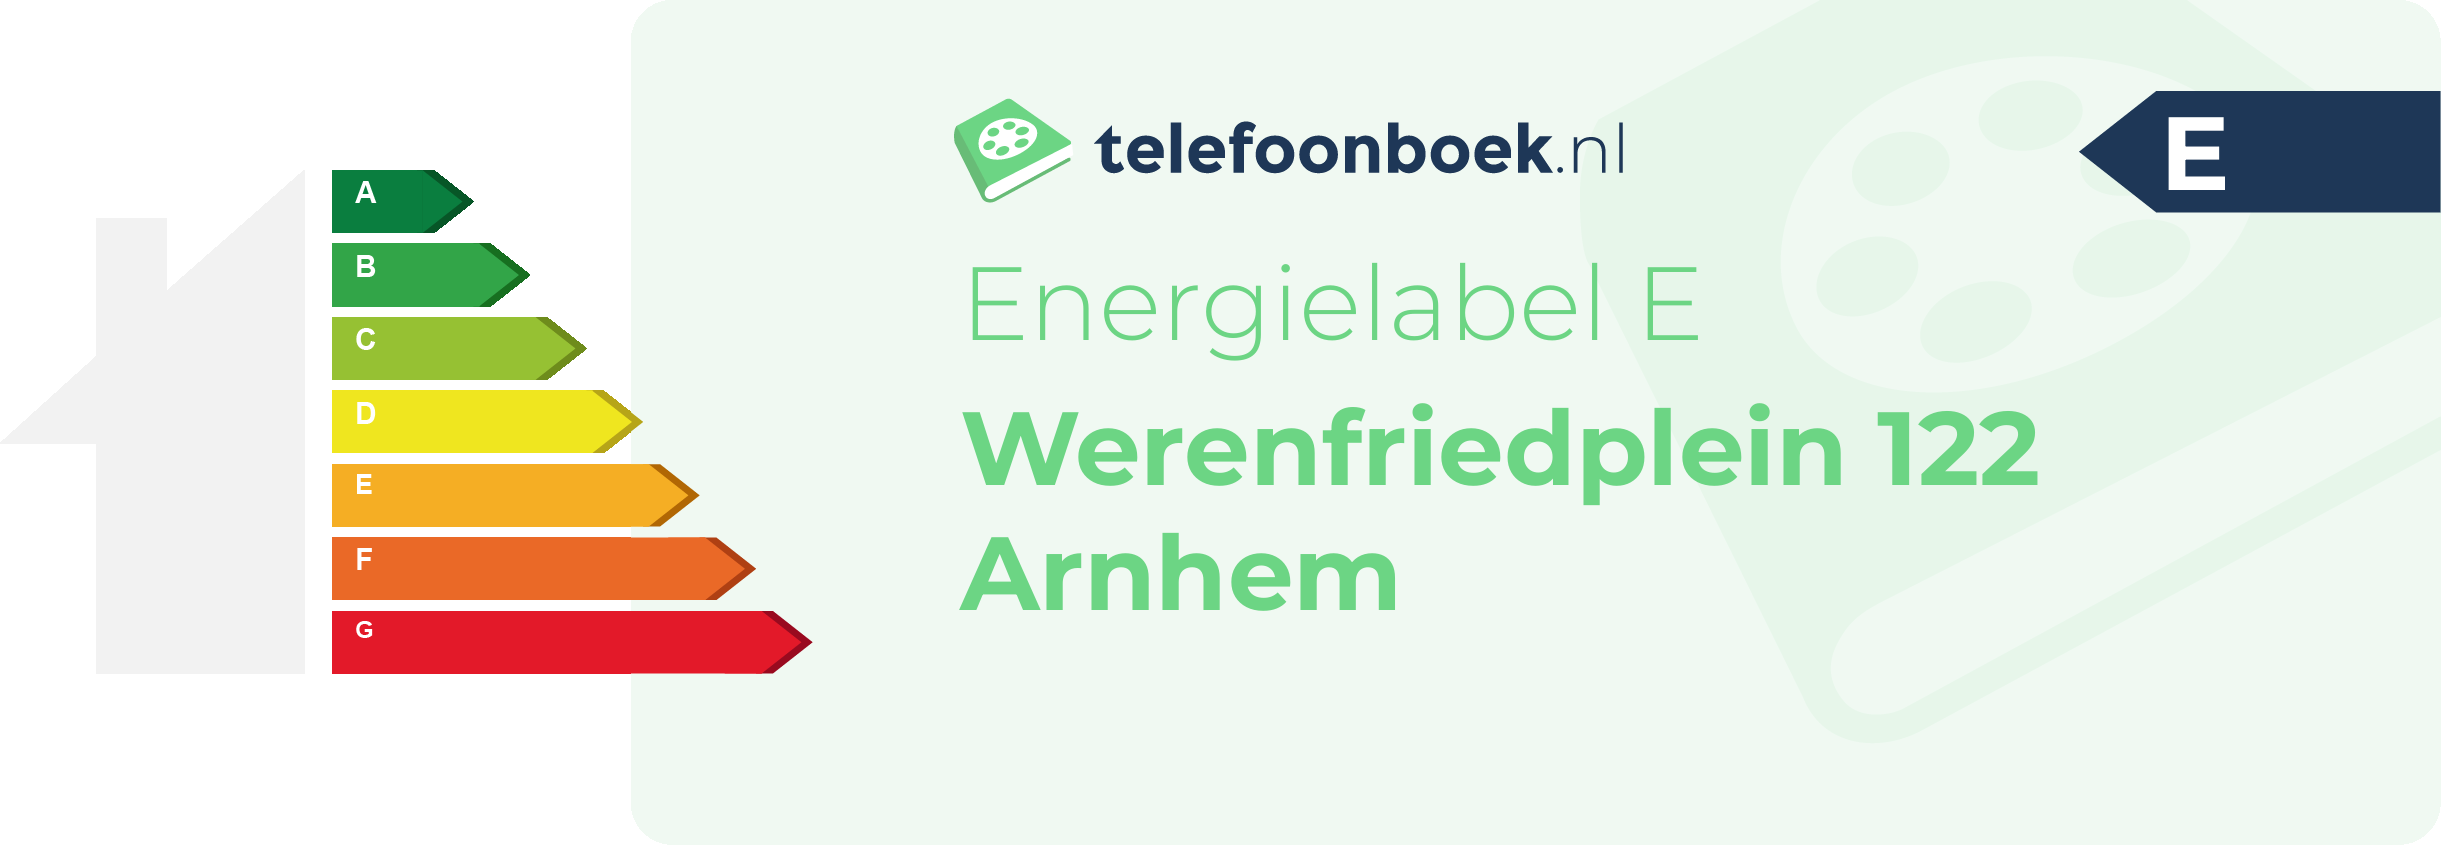 Energielabel Werenfriedplein 122 Arnhem